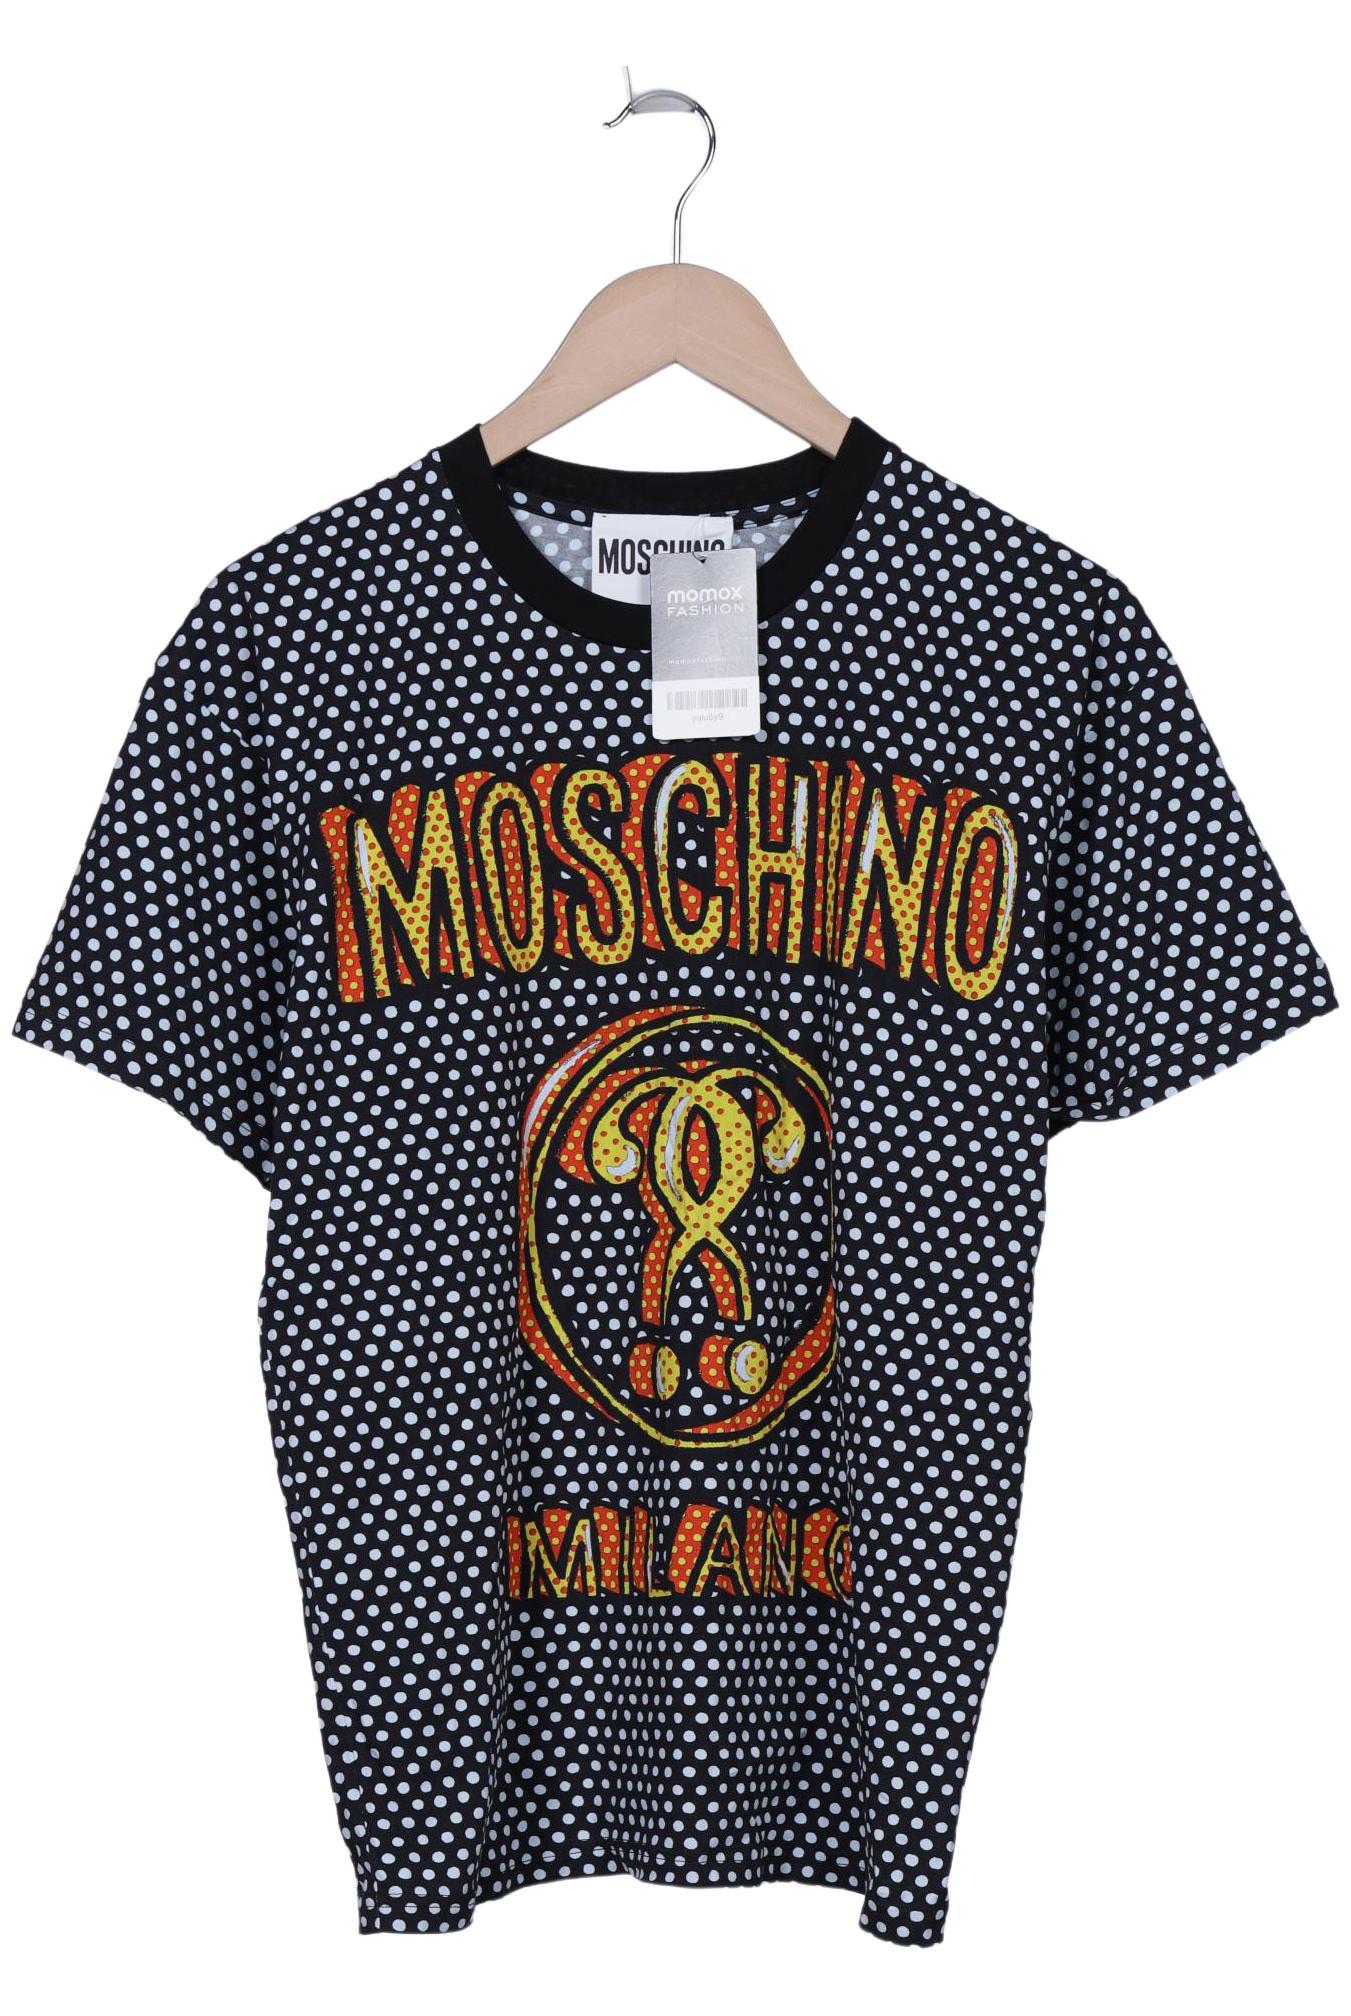 Moschino Damen T-Shirt, schwarz, Gr. 32 von Moschino